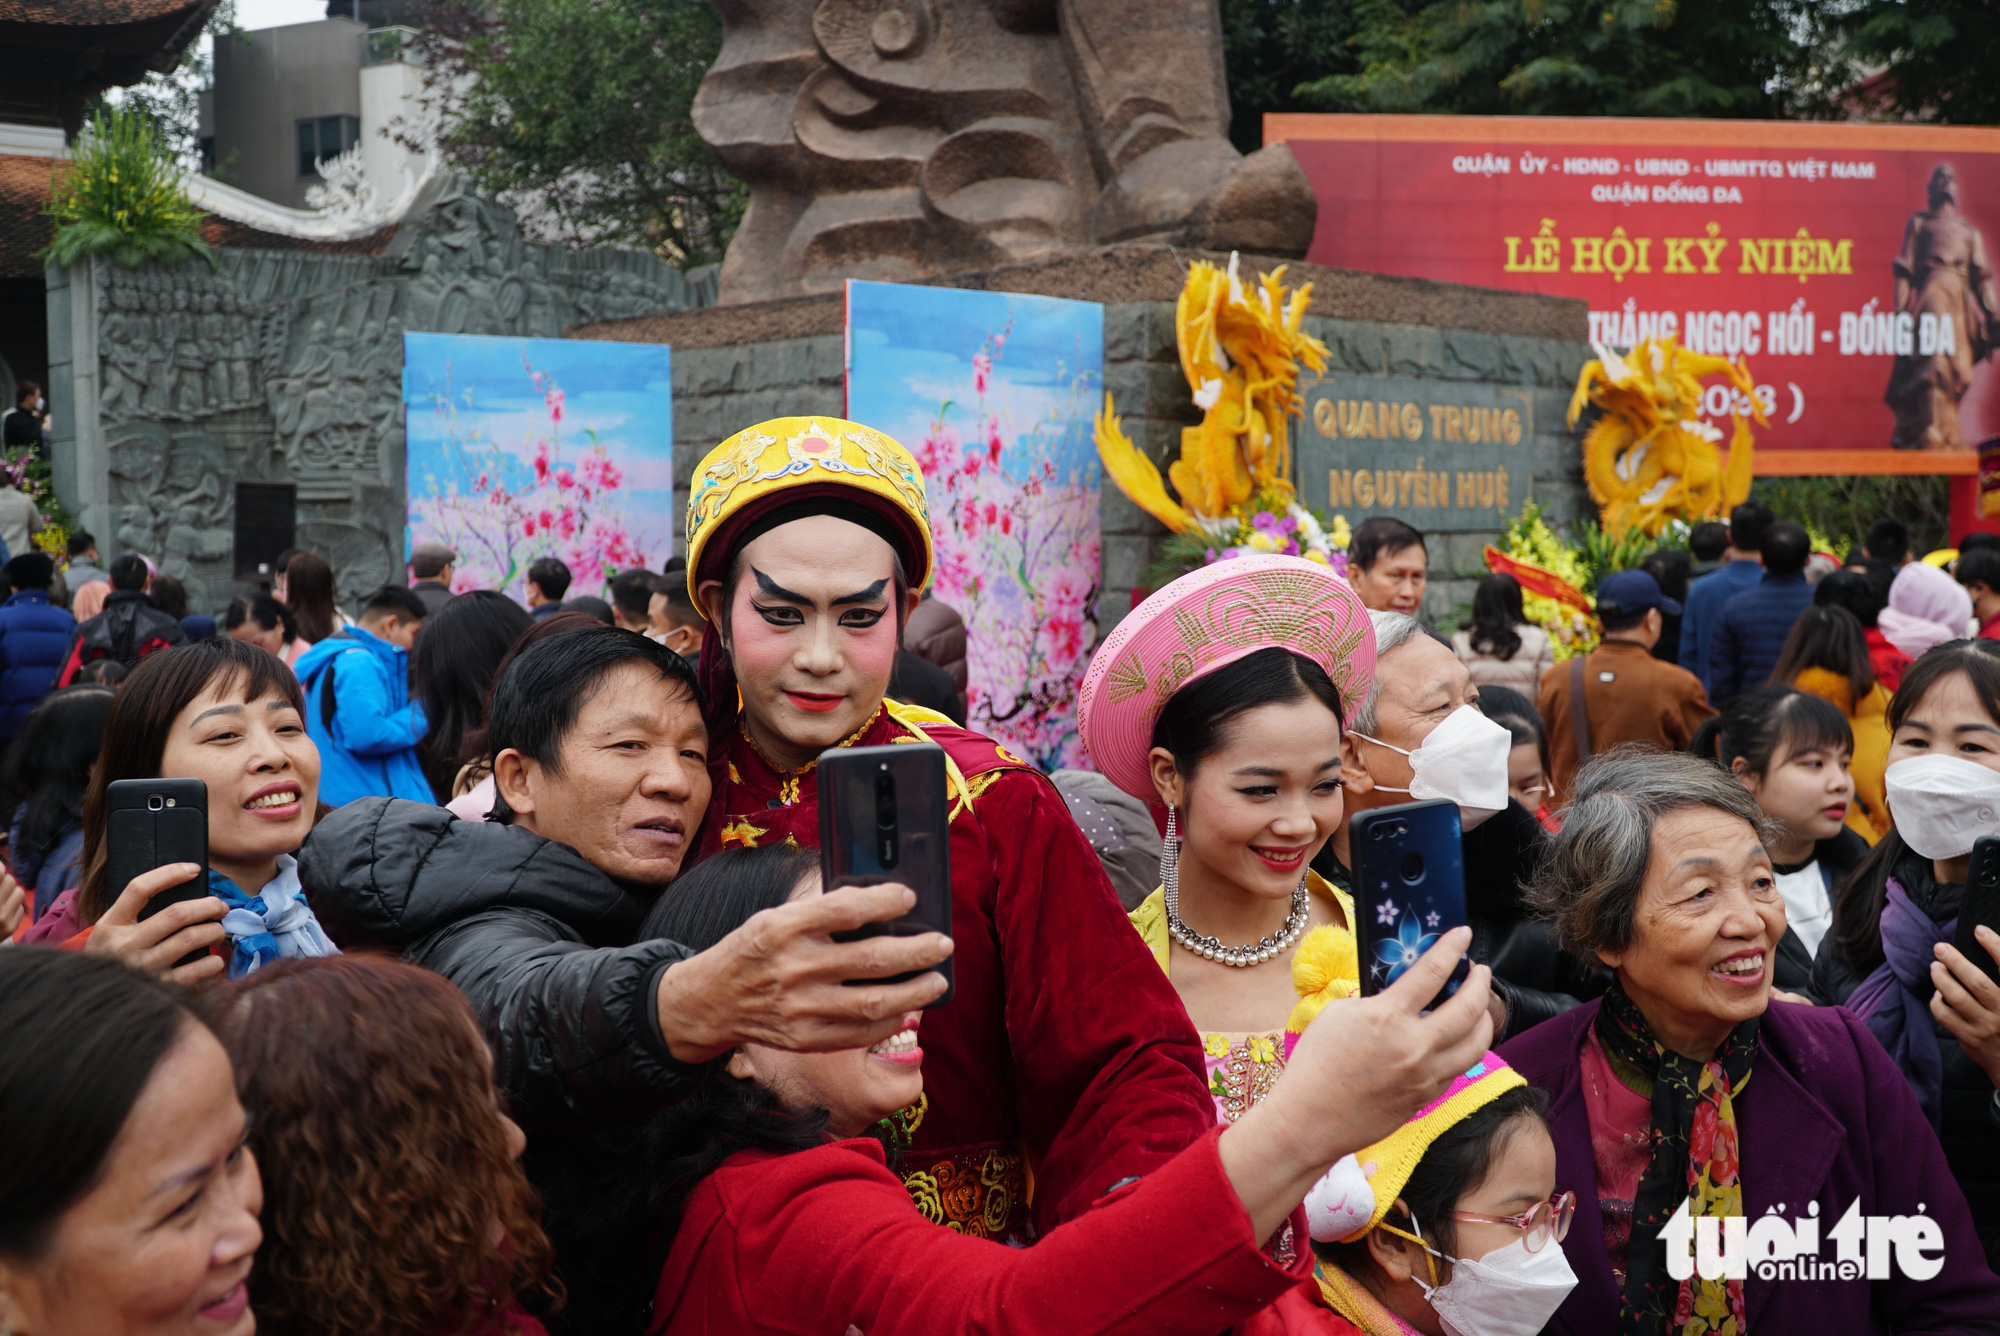 Tái hiện hình ảnh Vua Quang Trung trong lễ hội Đống Đa - Ảnh 2.